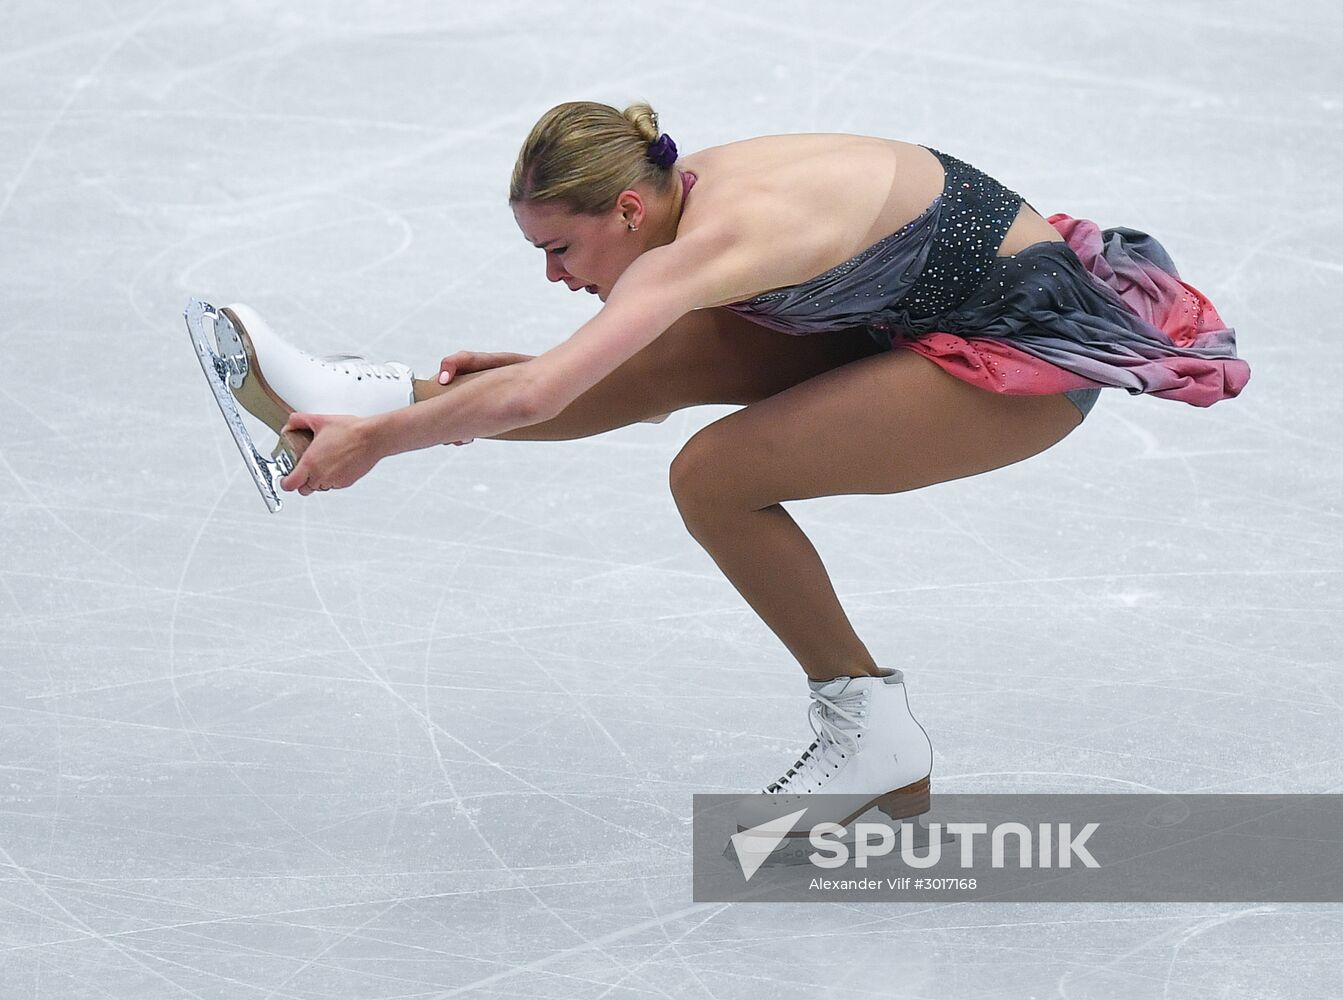 European Figure Skating Championship. Women's free skating